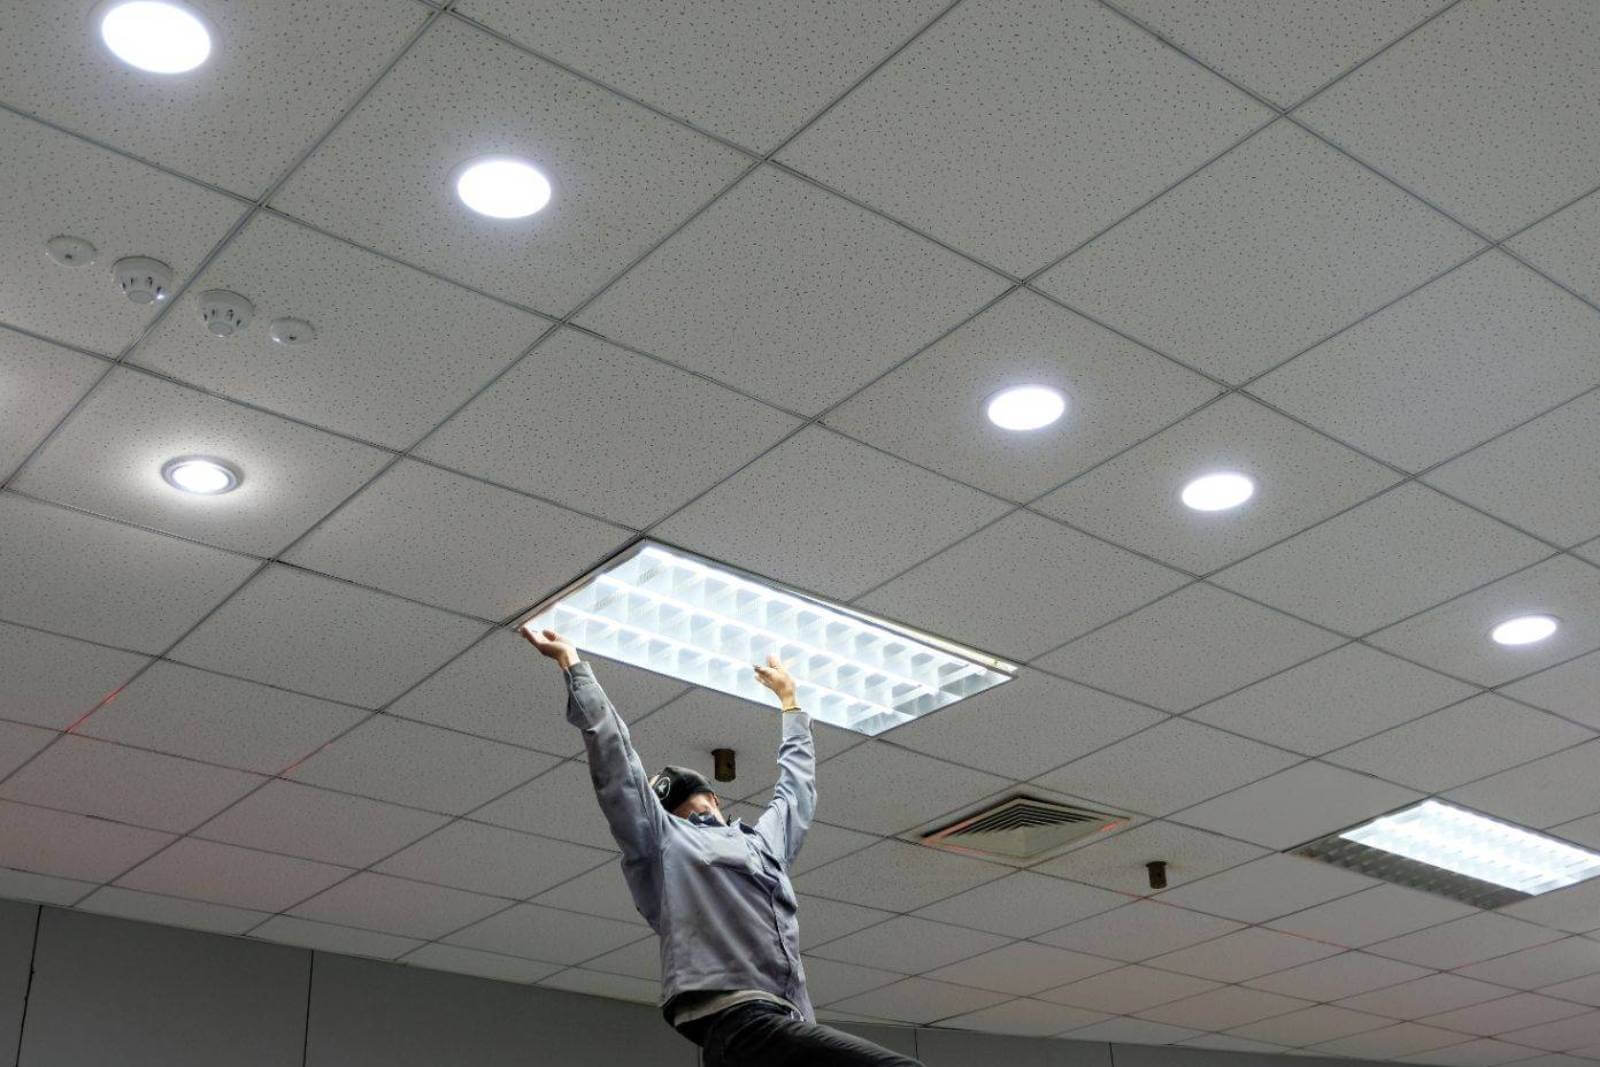 ACS worker installing light fixture